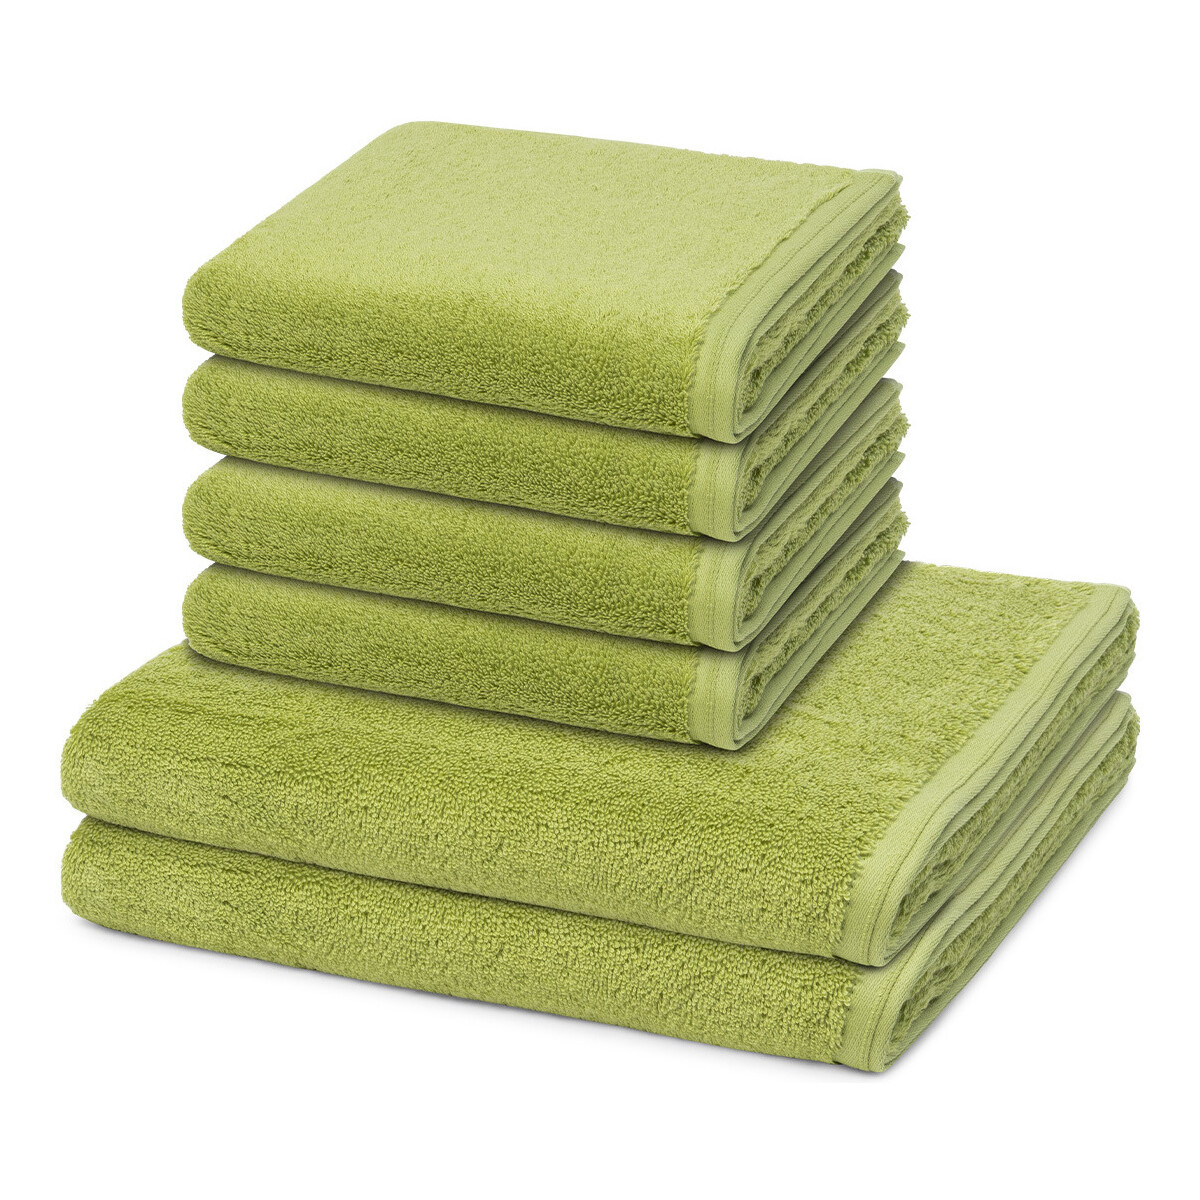 Home Handtuch und Waschlappen Vossen 6er Pack Vegan Life Grün